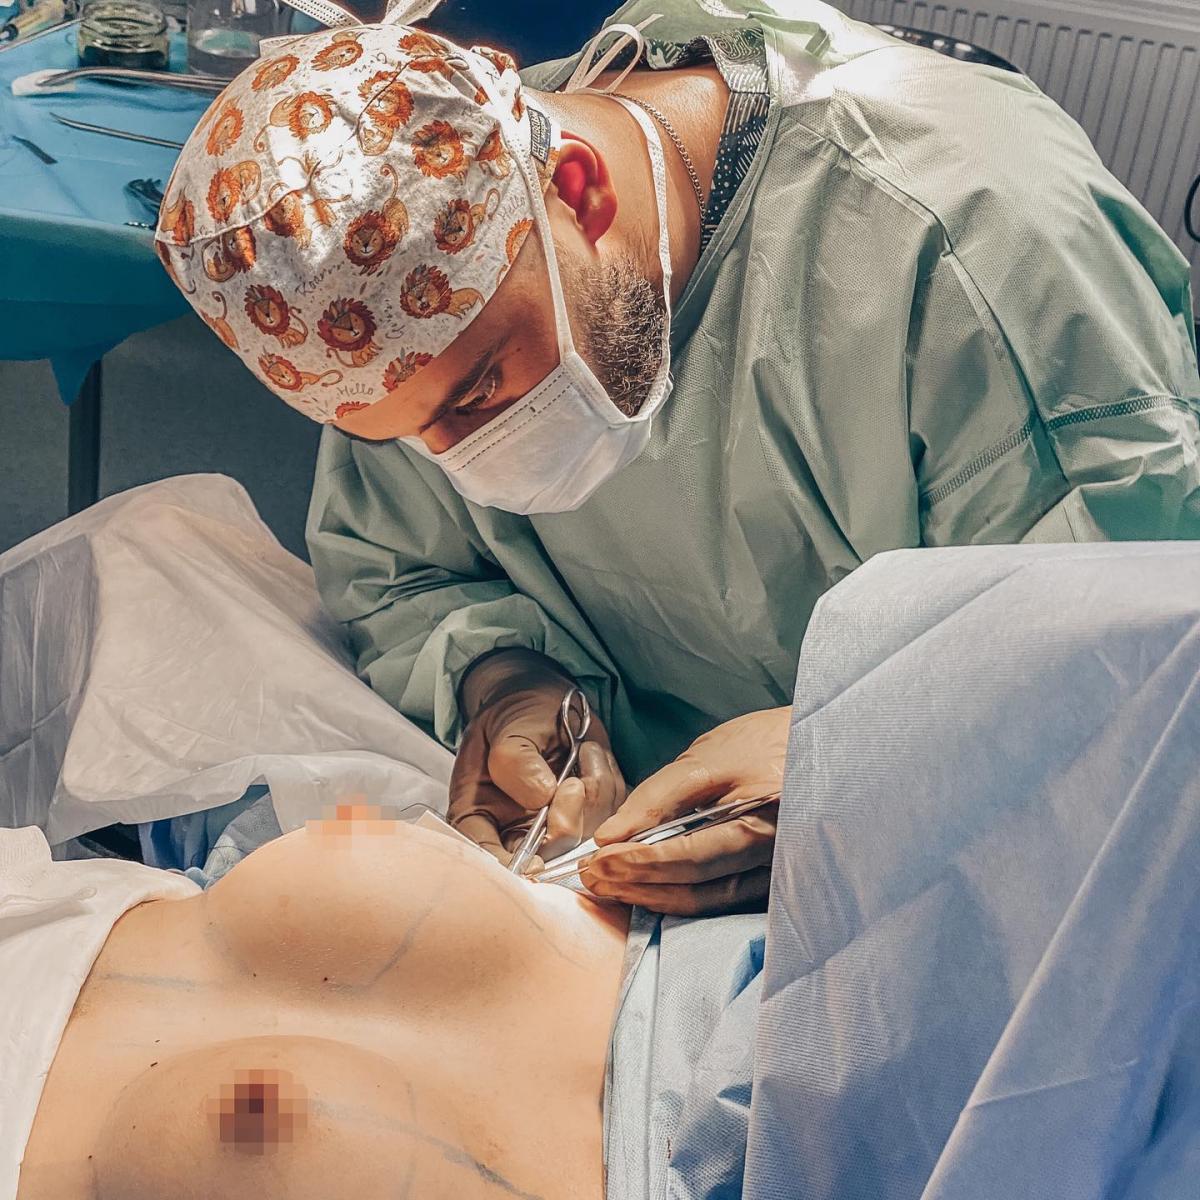 Чем больше по объему оперативное вмешательство, тем дольше реабилитационный период, - хирург / instagram.com/irakli_surgery